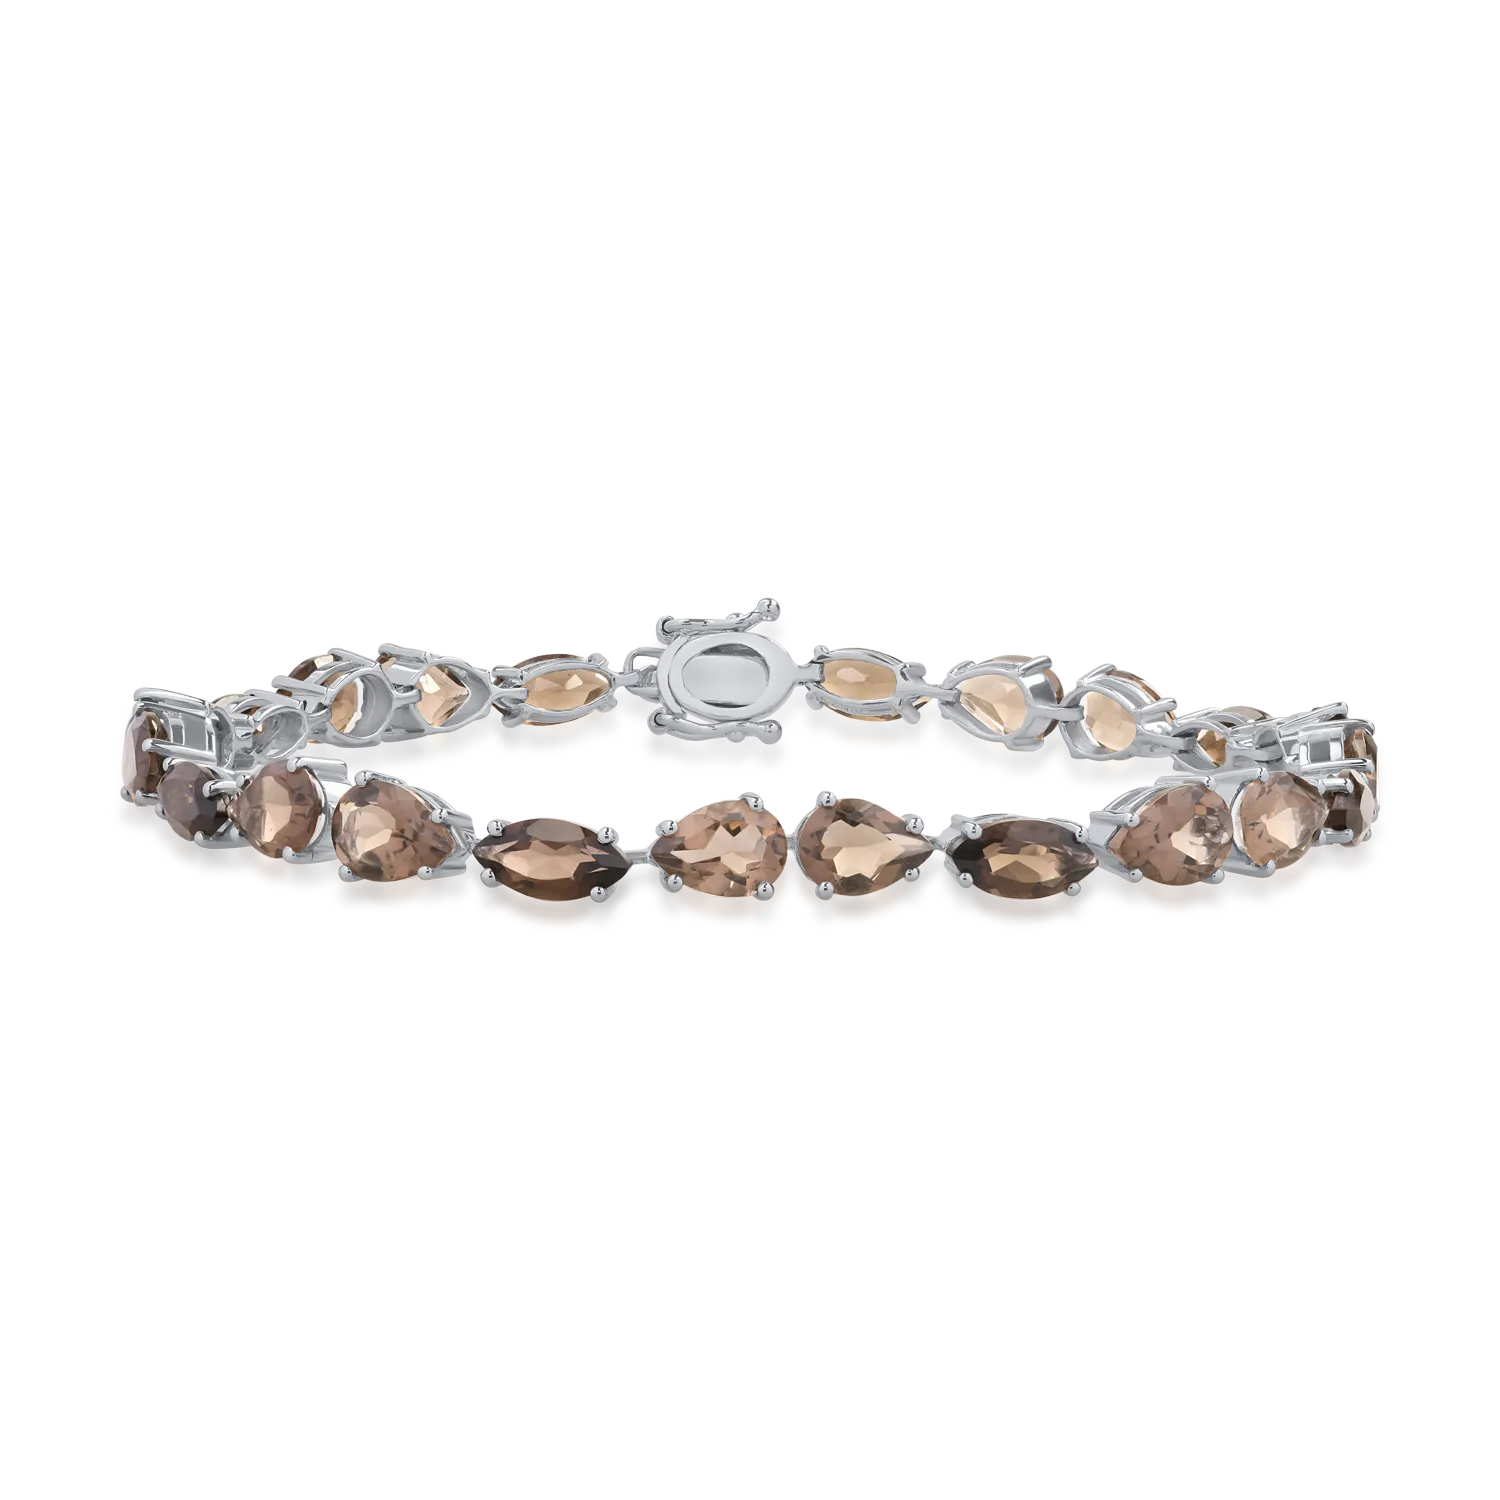 14K white gold tennis bracelet with 9.52ct smoky quartz and 4.16ct smoky quartz